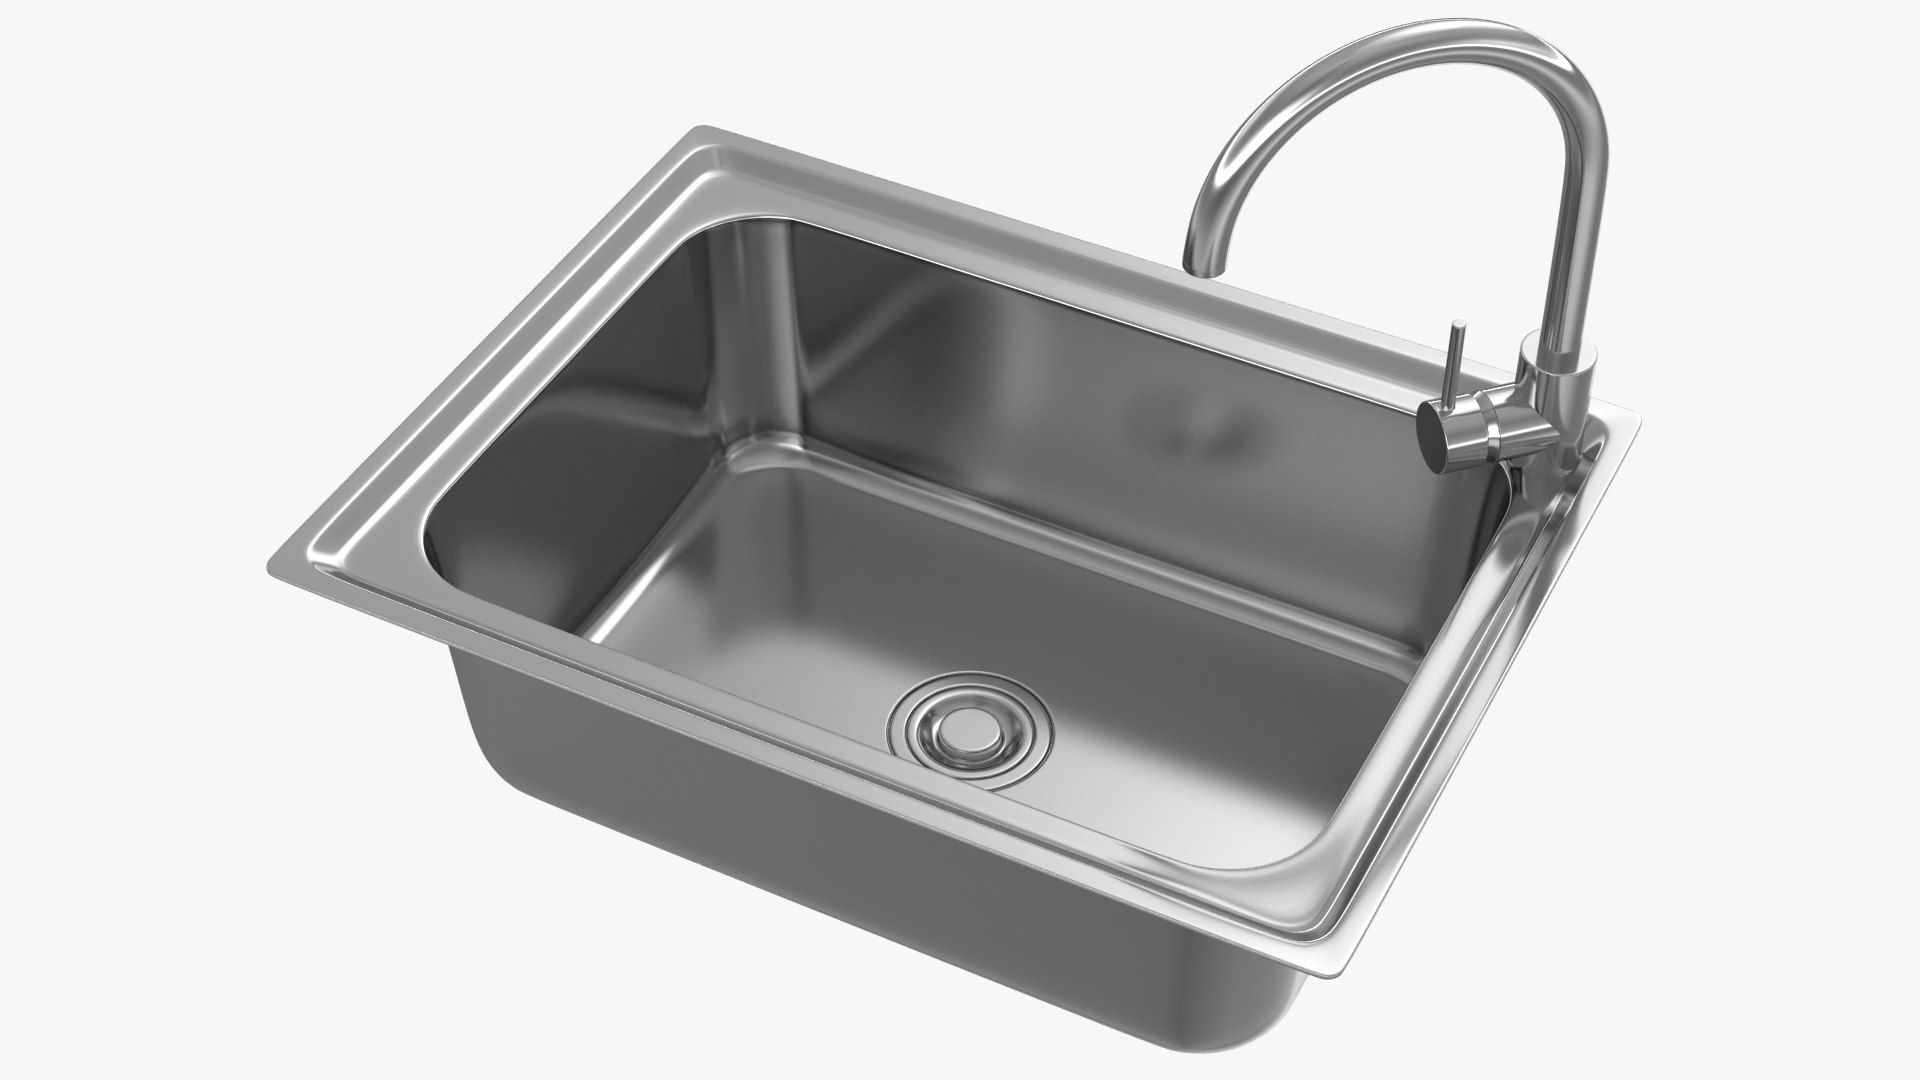 old kitchen sink 3d model free download